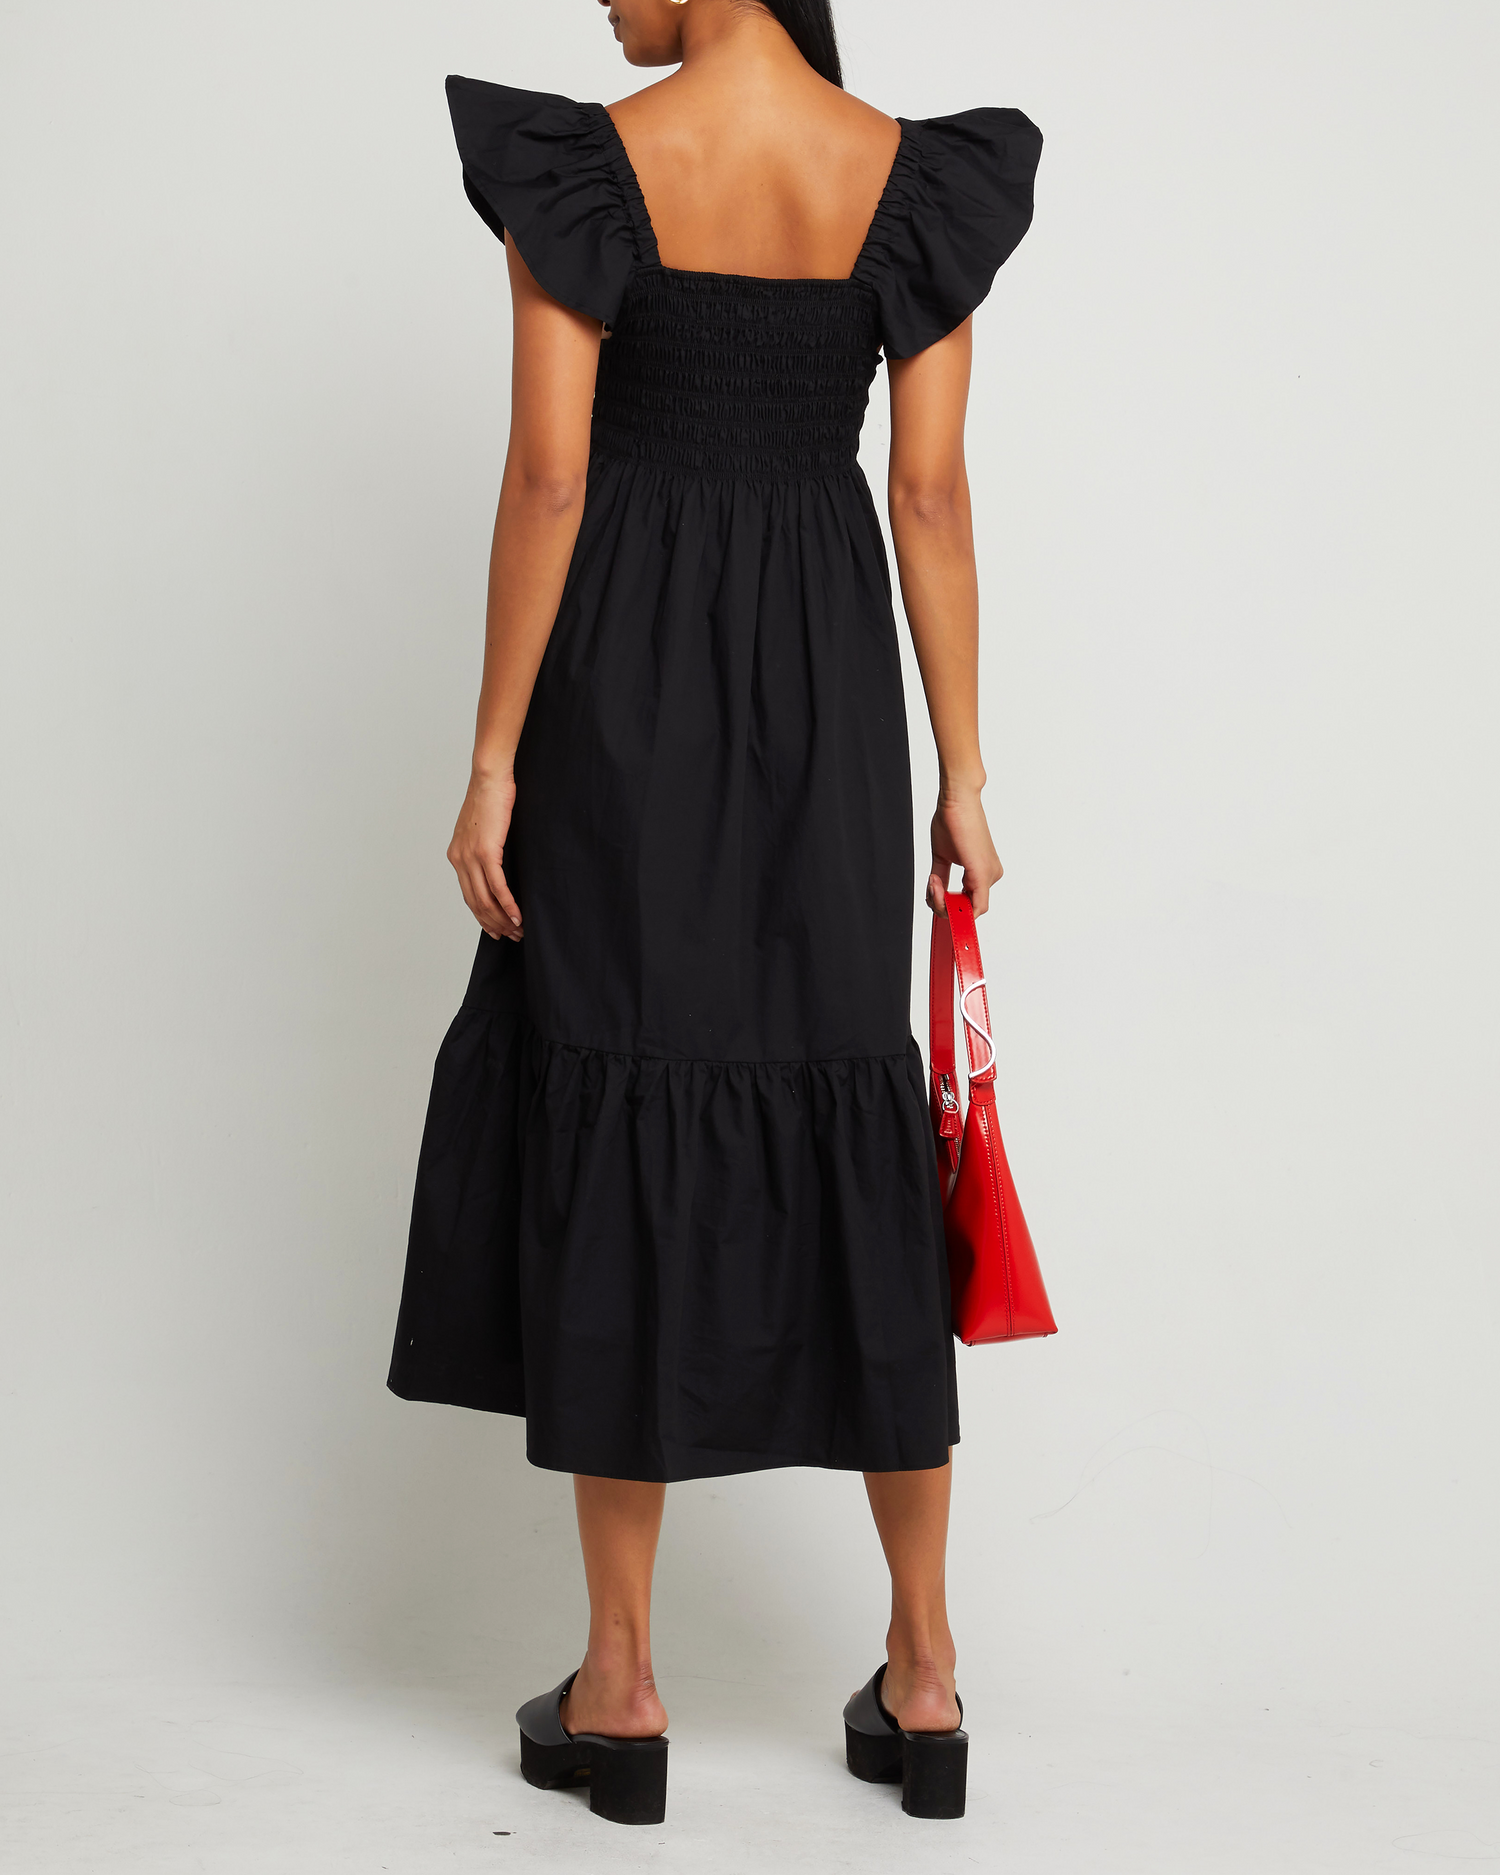 Second image of Tuscany Dress, a black maxi dress, smocked bodice, ruffled cap sleeves, pockets